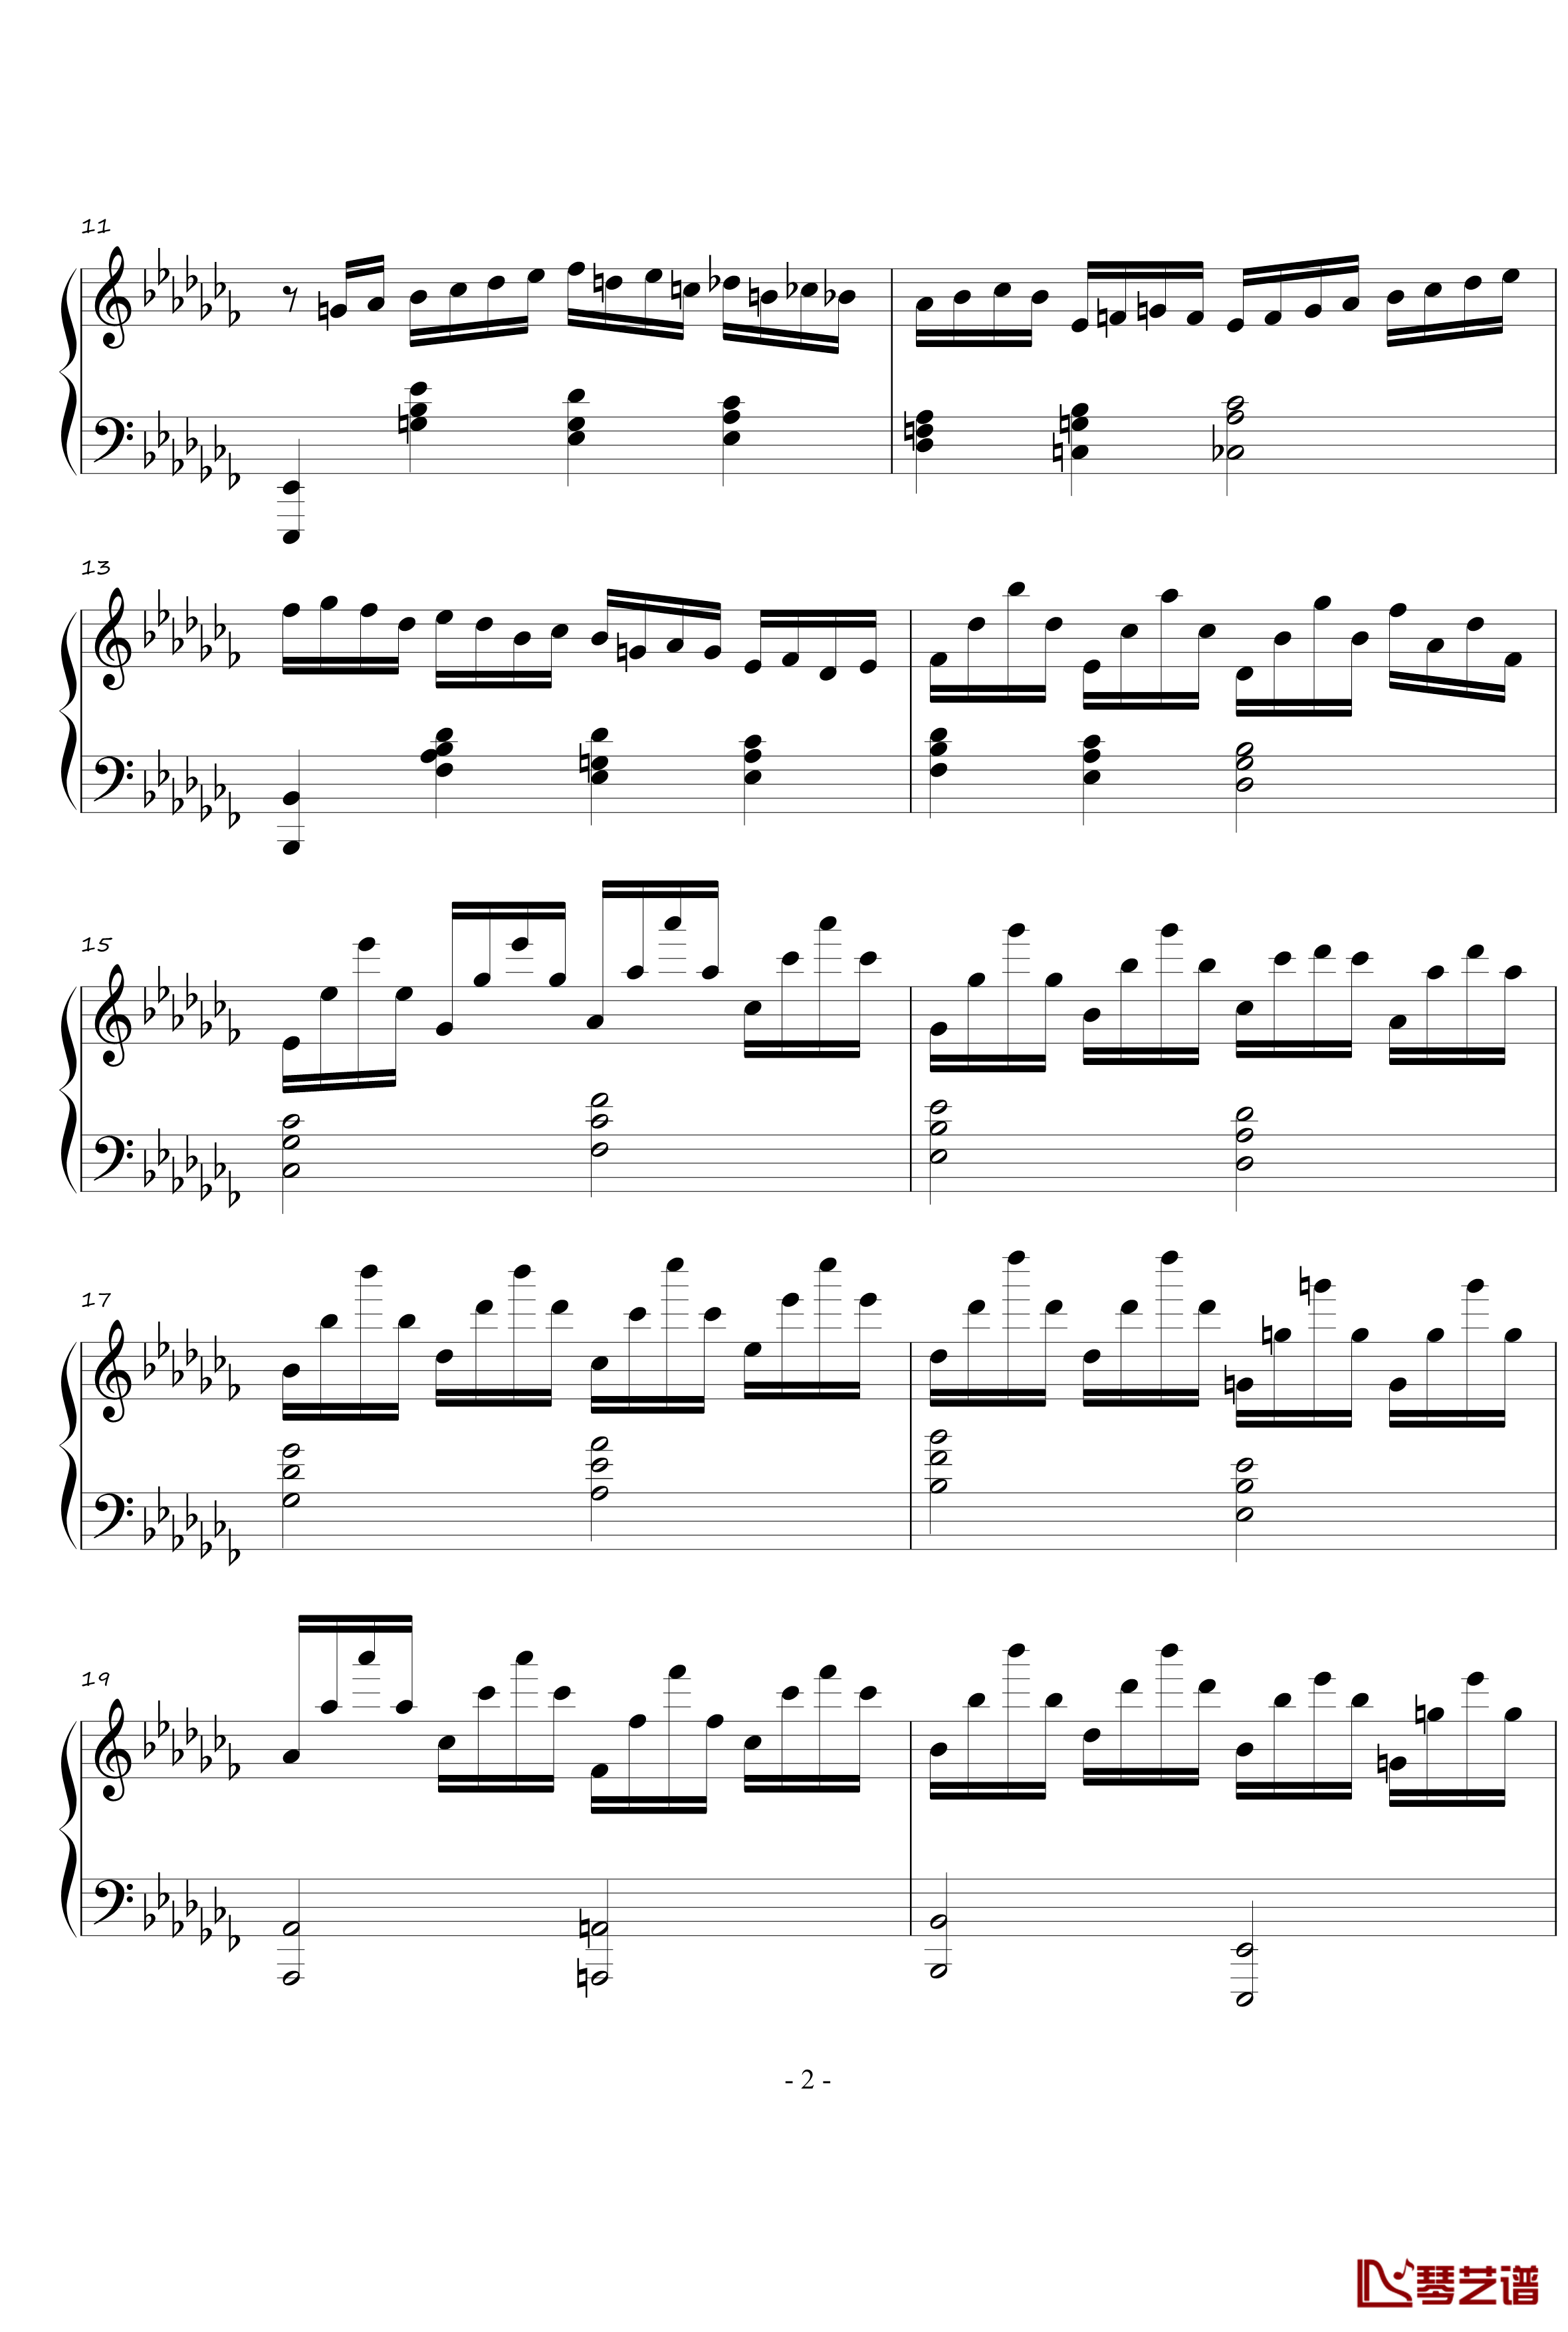 火星音阶练习曲钢琴谱-Op.2 No.1-火星先生2